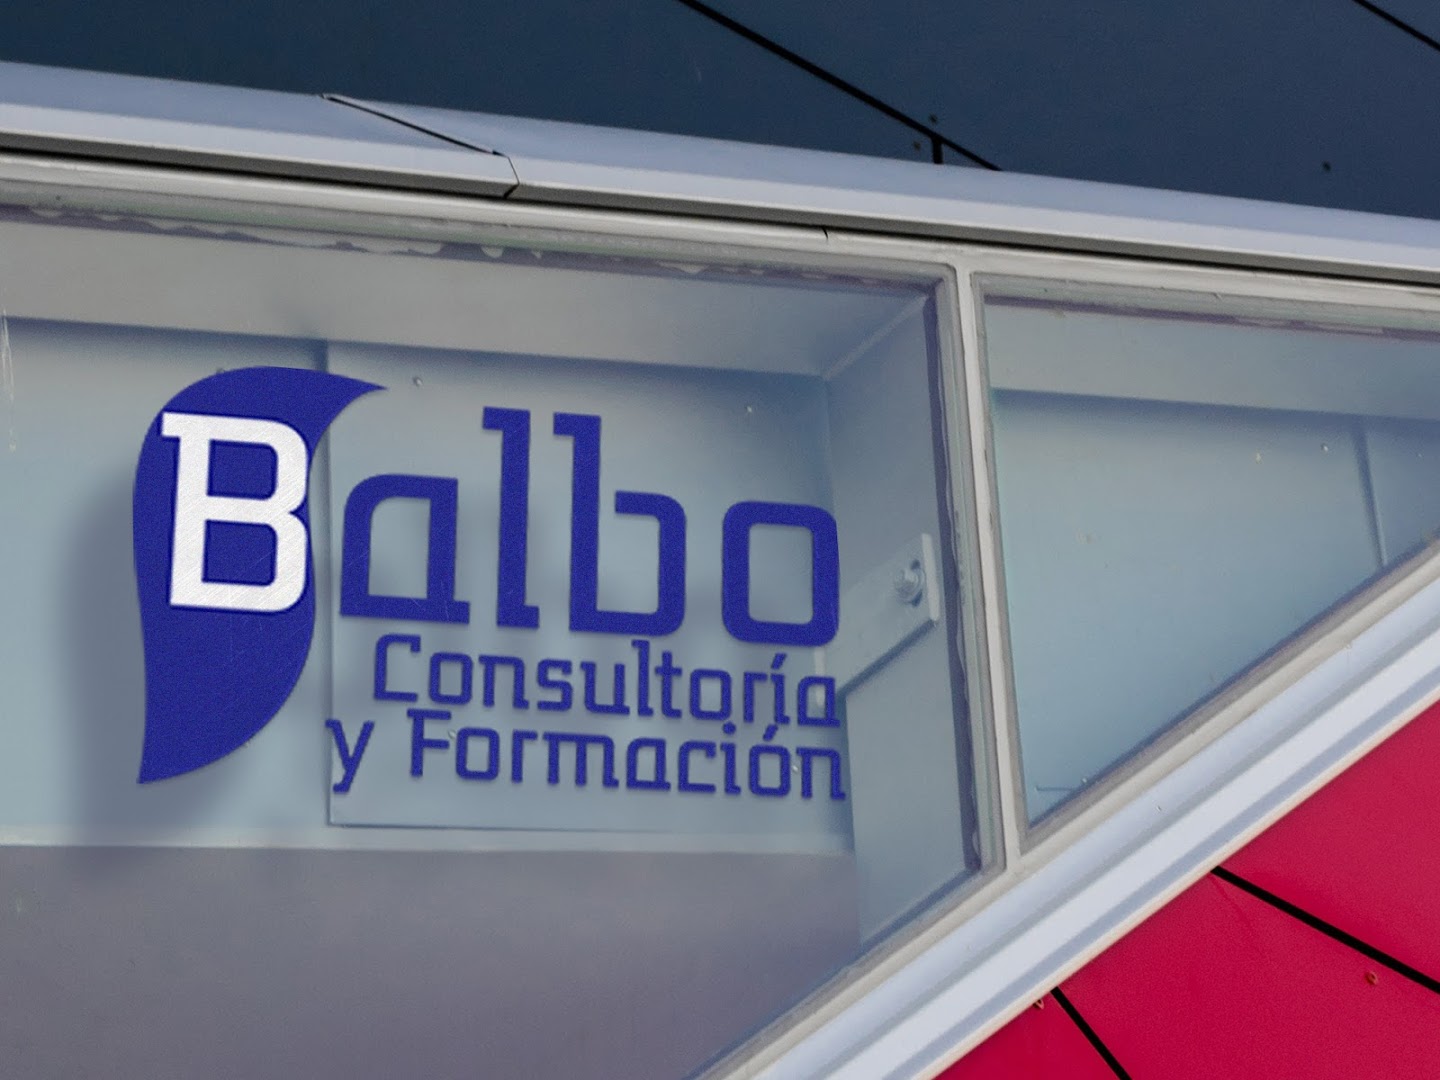 Consultoria y Formacion BALBO S.L.